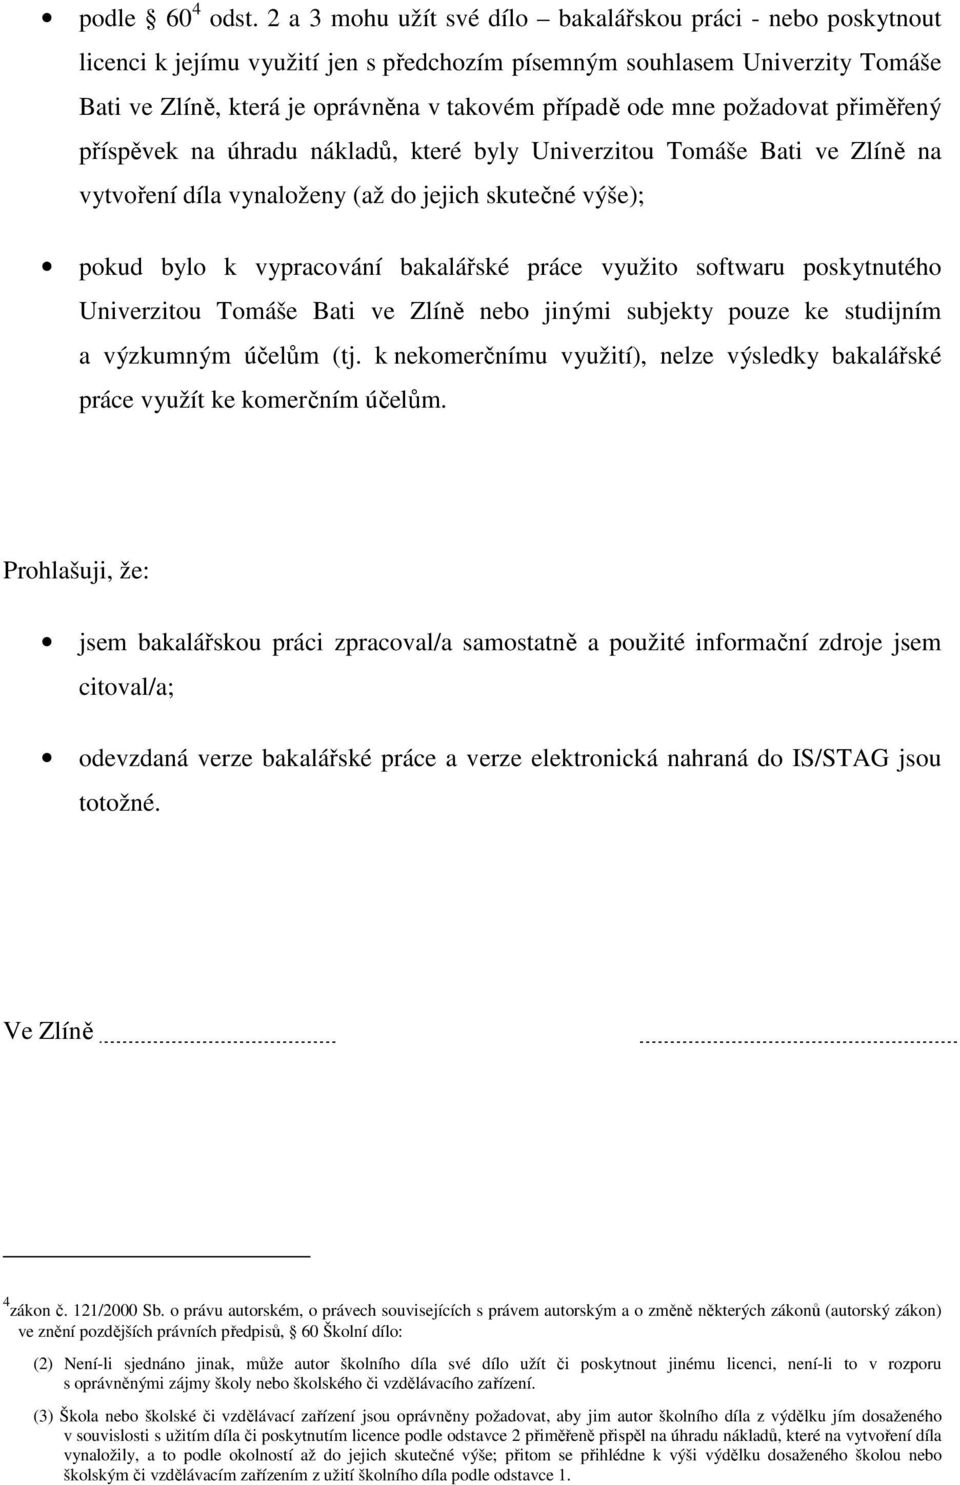 požadovat přiměřený příspěvek na úhradu nákladů, které byly Univerzitou Tomáše Bati ve Zlíně na vytvoření díla vynaloženy (až do jejich skutečné výše); pokud bylo k vypracování bakalářské práce